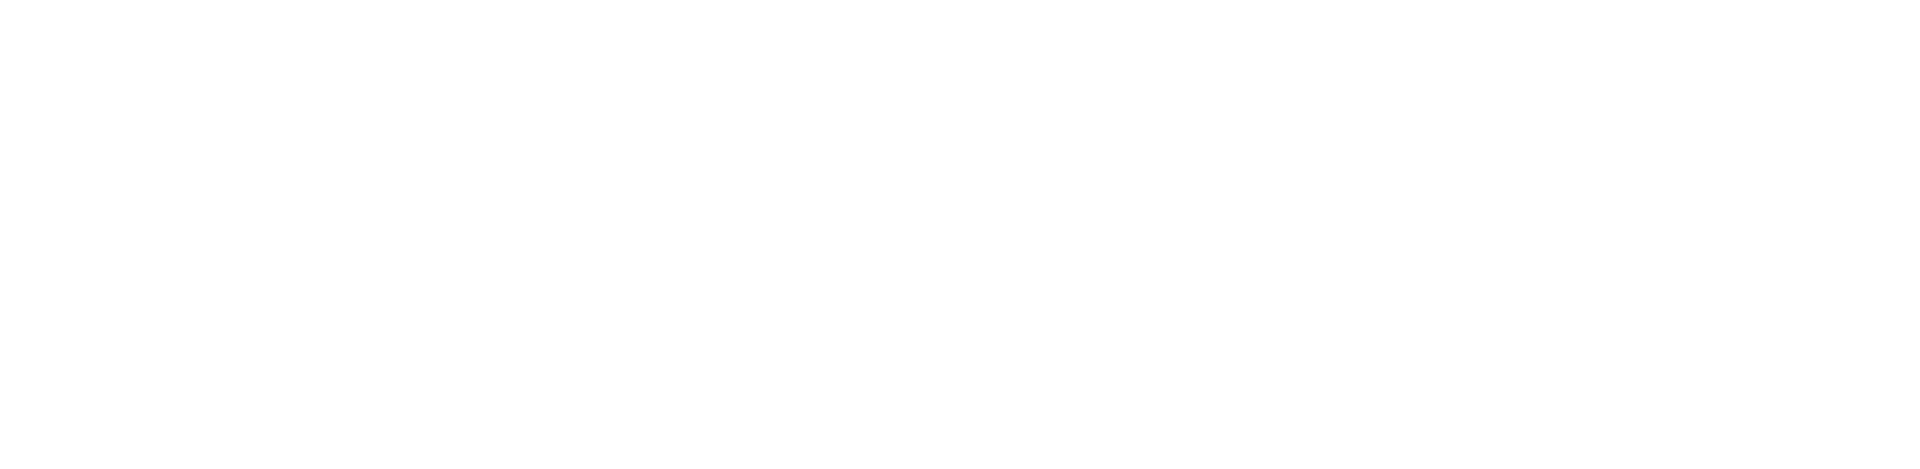 dayonefunding